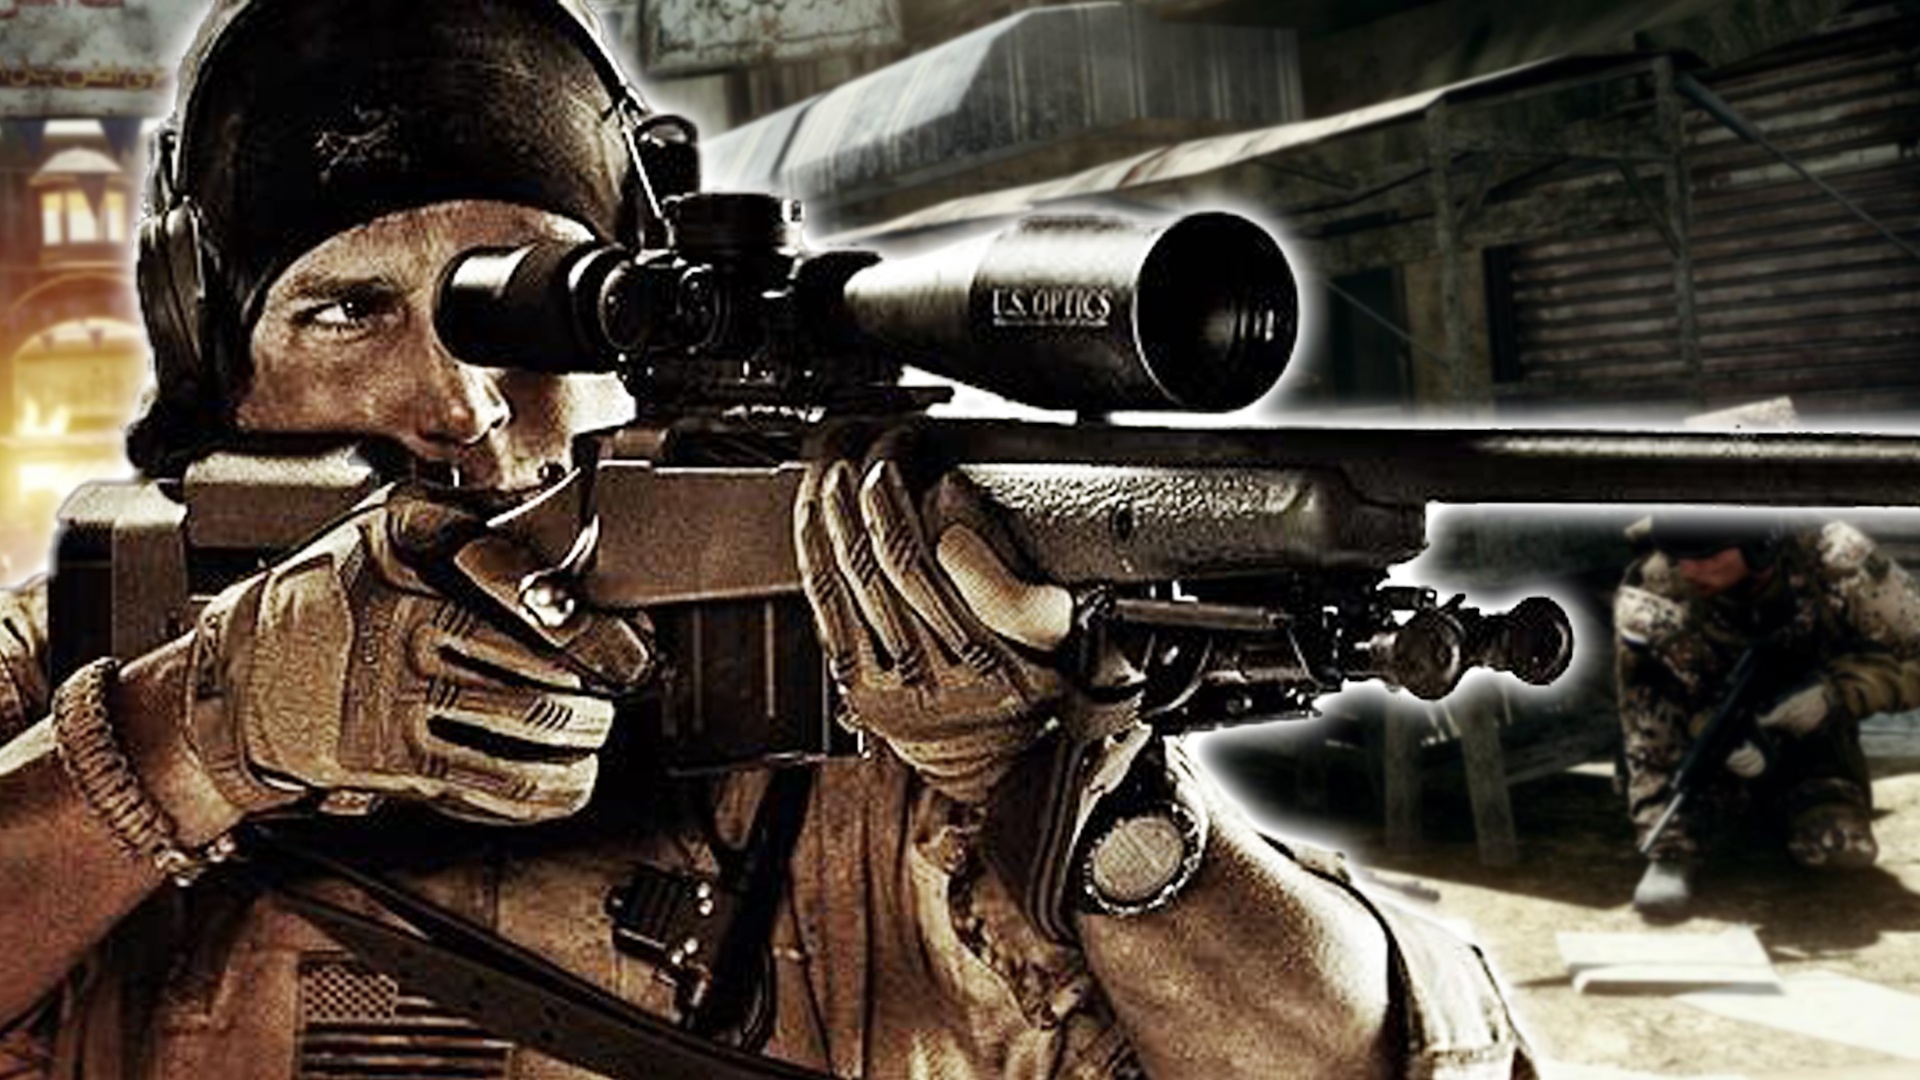 #Medal of Honor: Diese Woche wird eine legendäre Shooter-Serie zu Grabe getragen